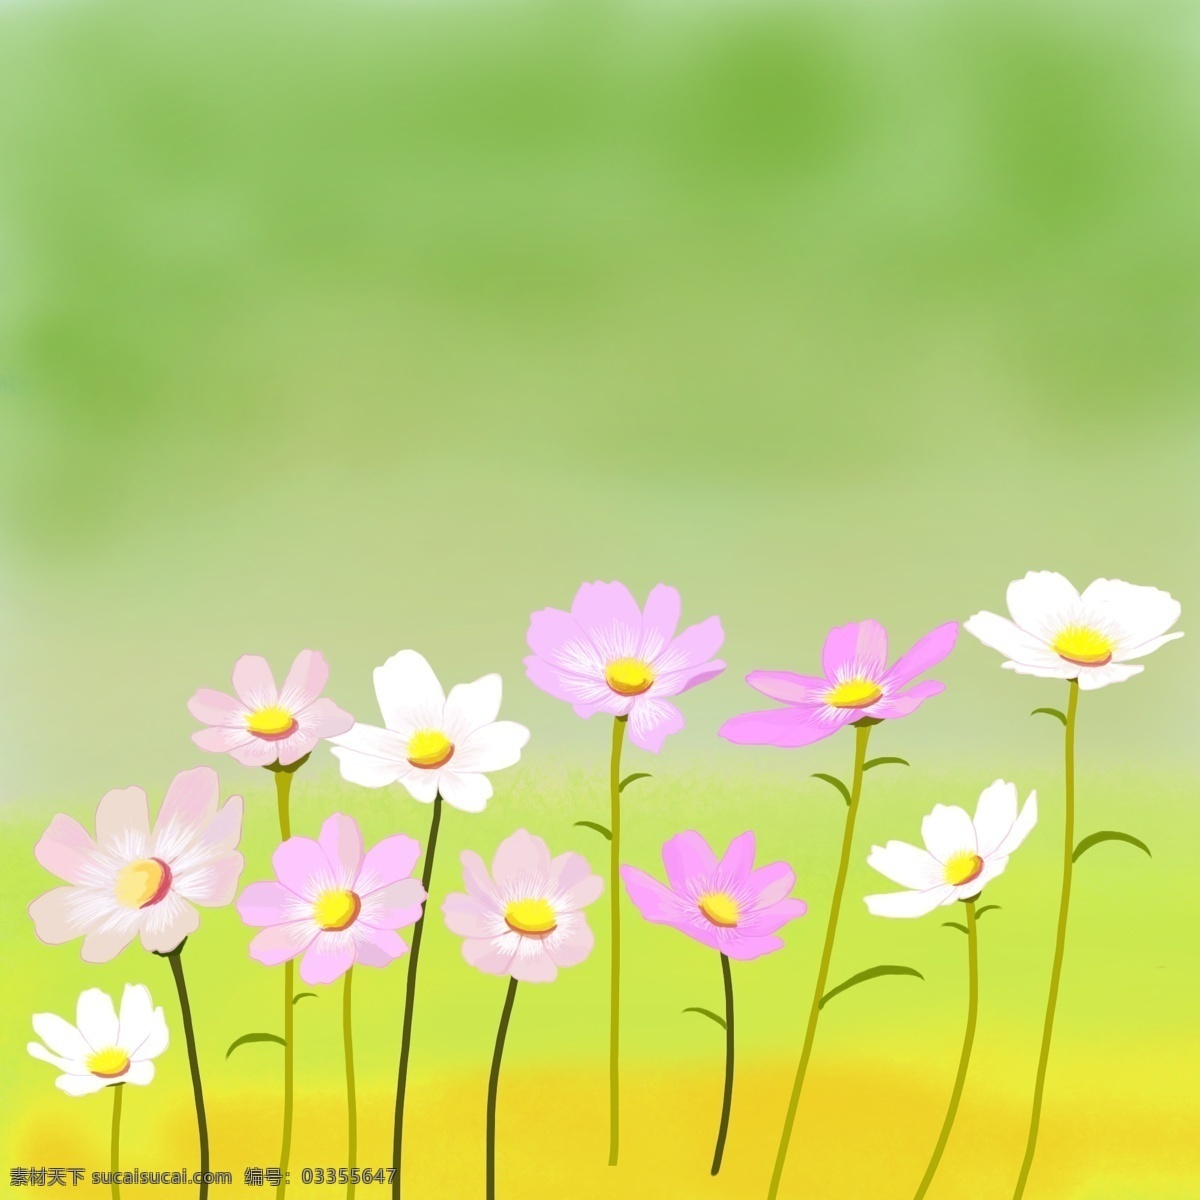 草地 上 开 满 格桑 花 格桑花 鲜花 小花 春天 绿色 白色花 紫色花 黄色花蕊 插画 手绘 草原 叶子